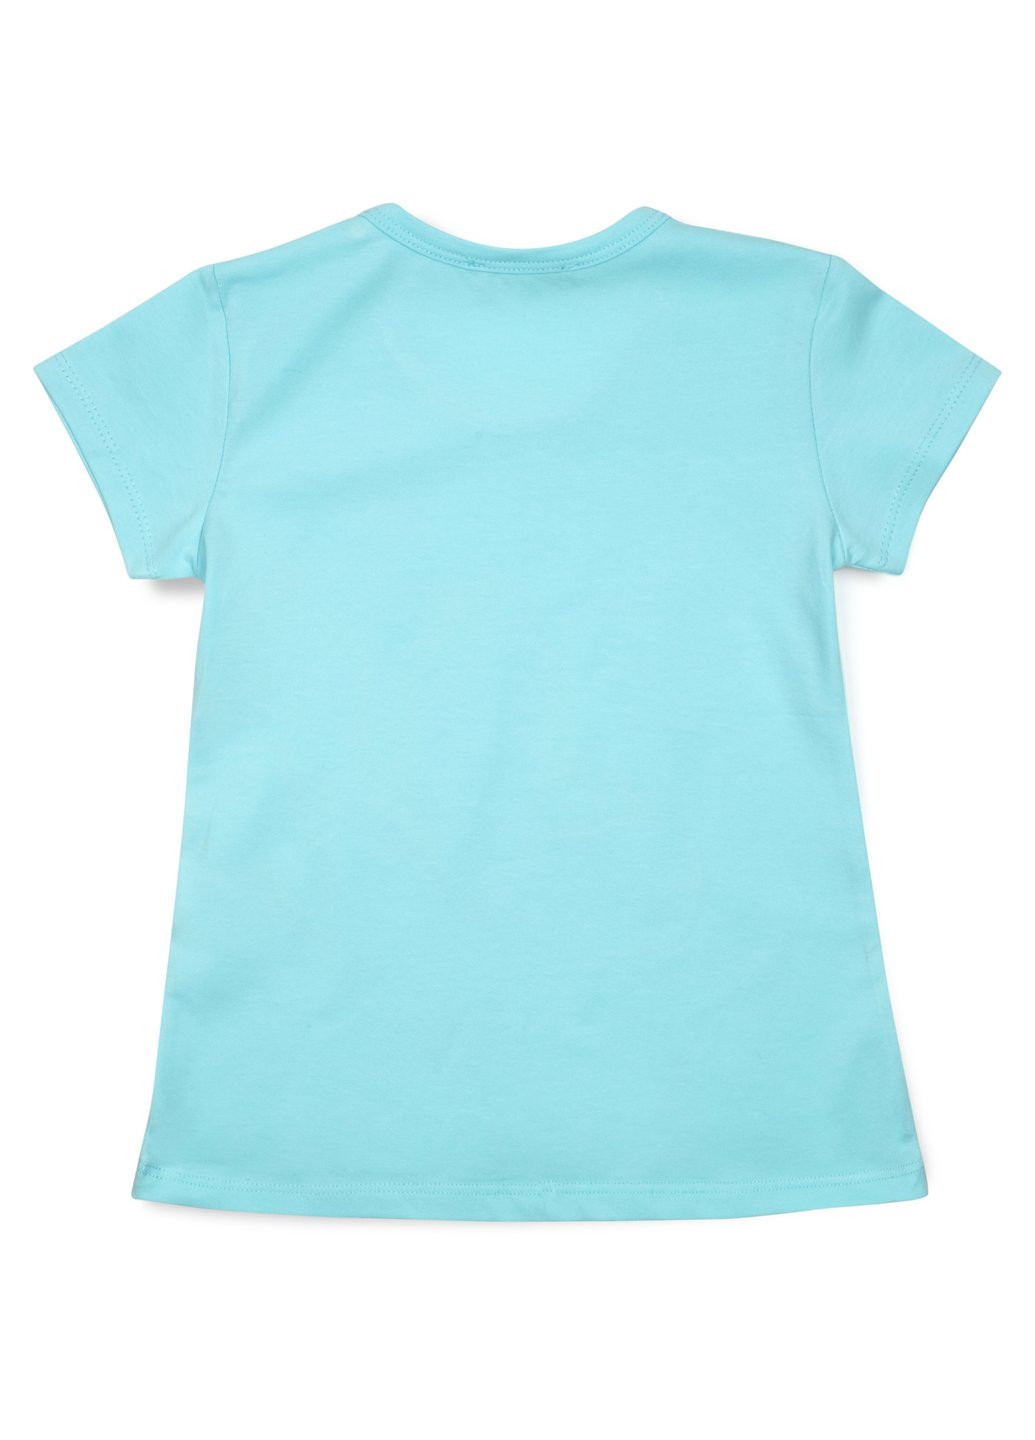 Комбинированная футболка детская с бабочками (14111-104g-blue) Breeze